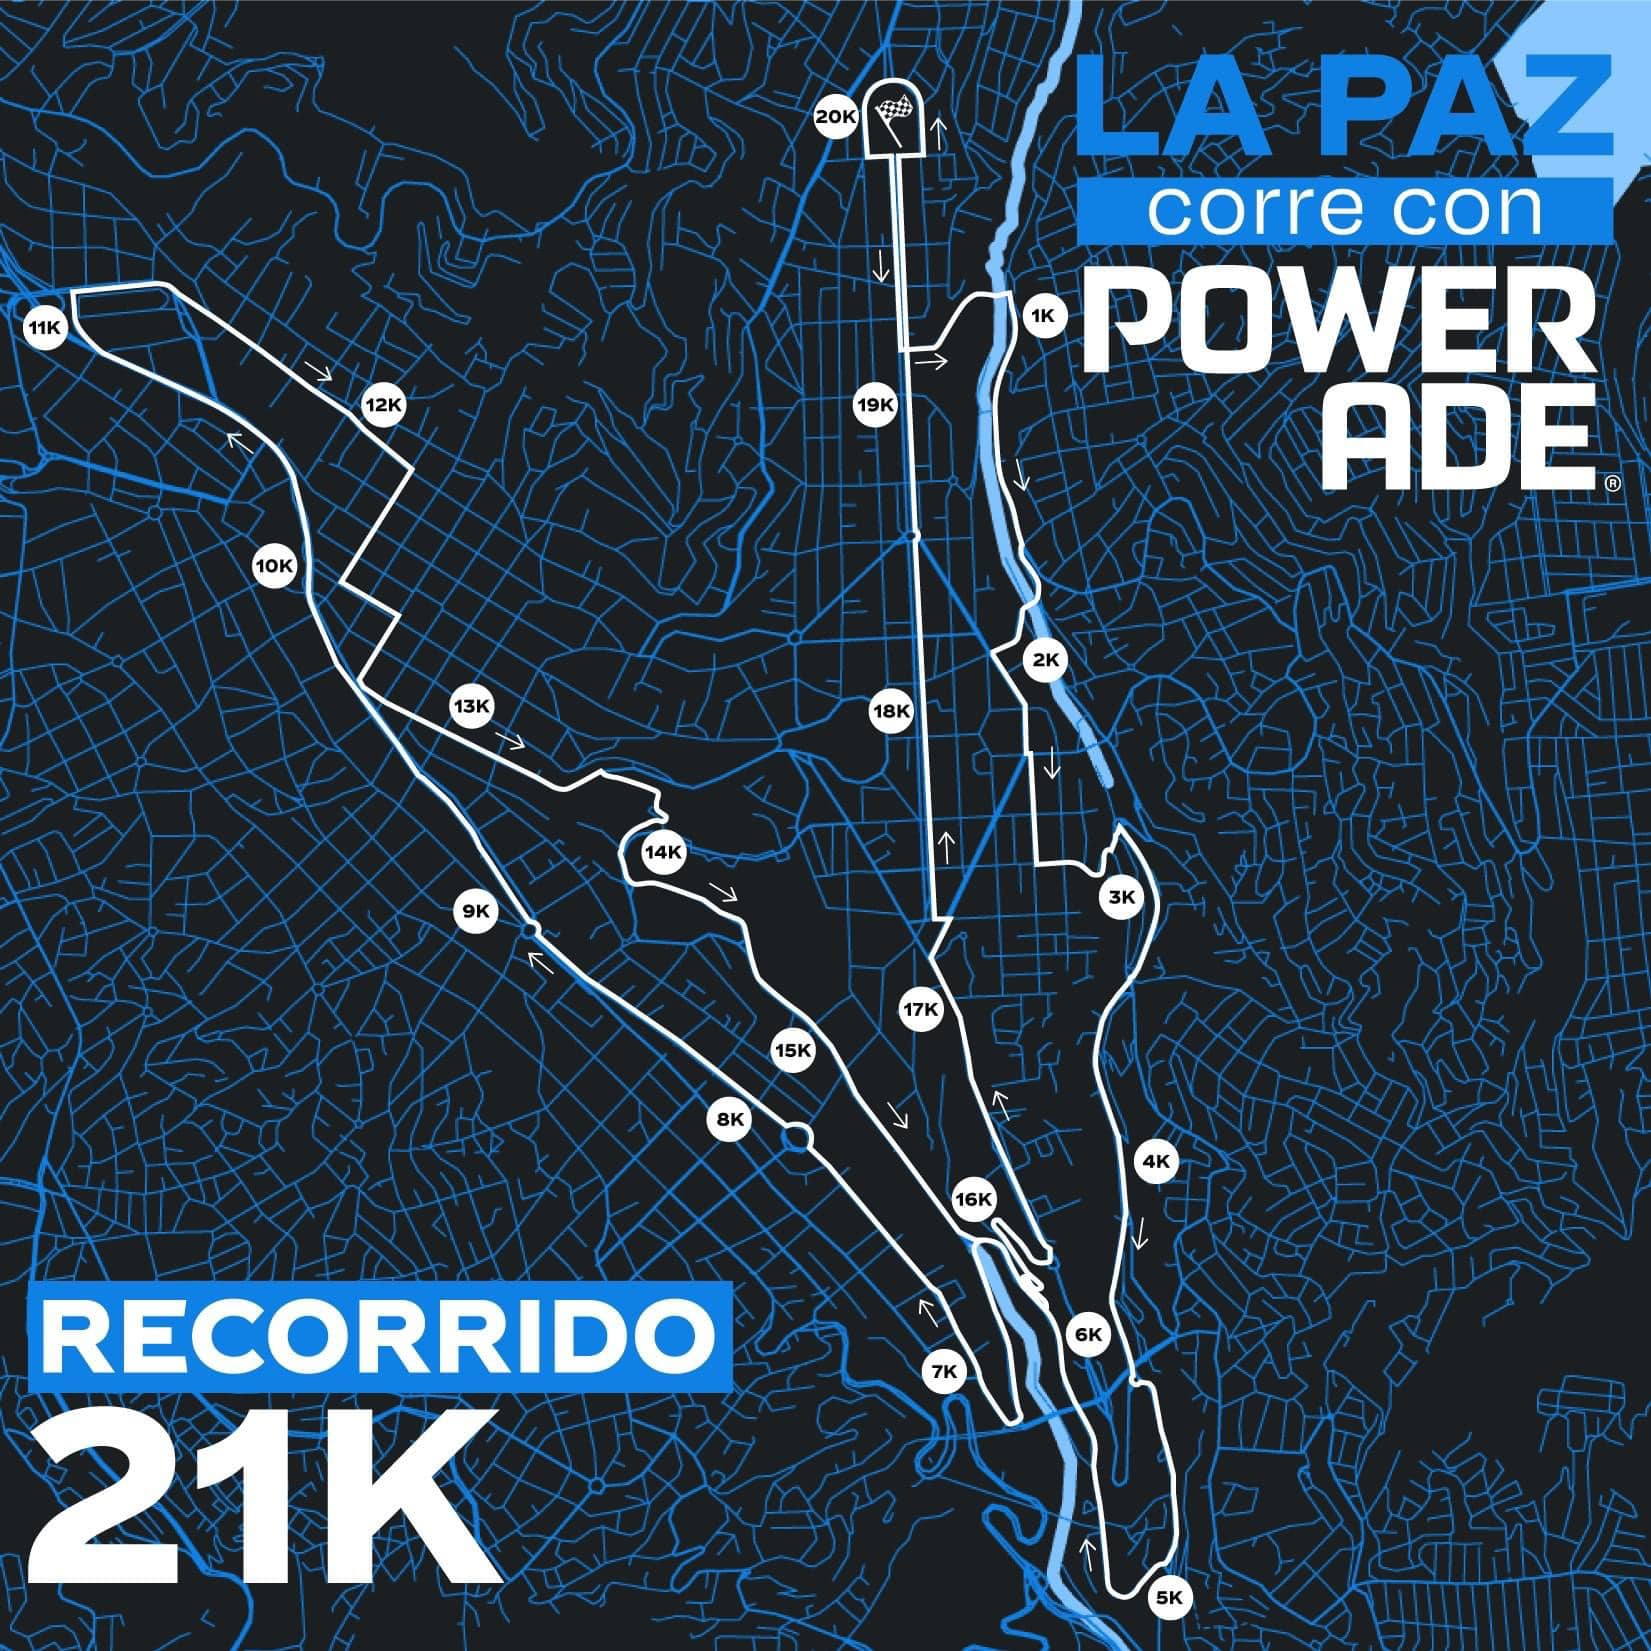 Recorrido La Paz corre con POWERADE 21K